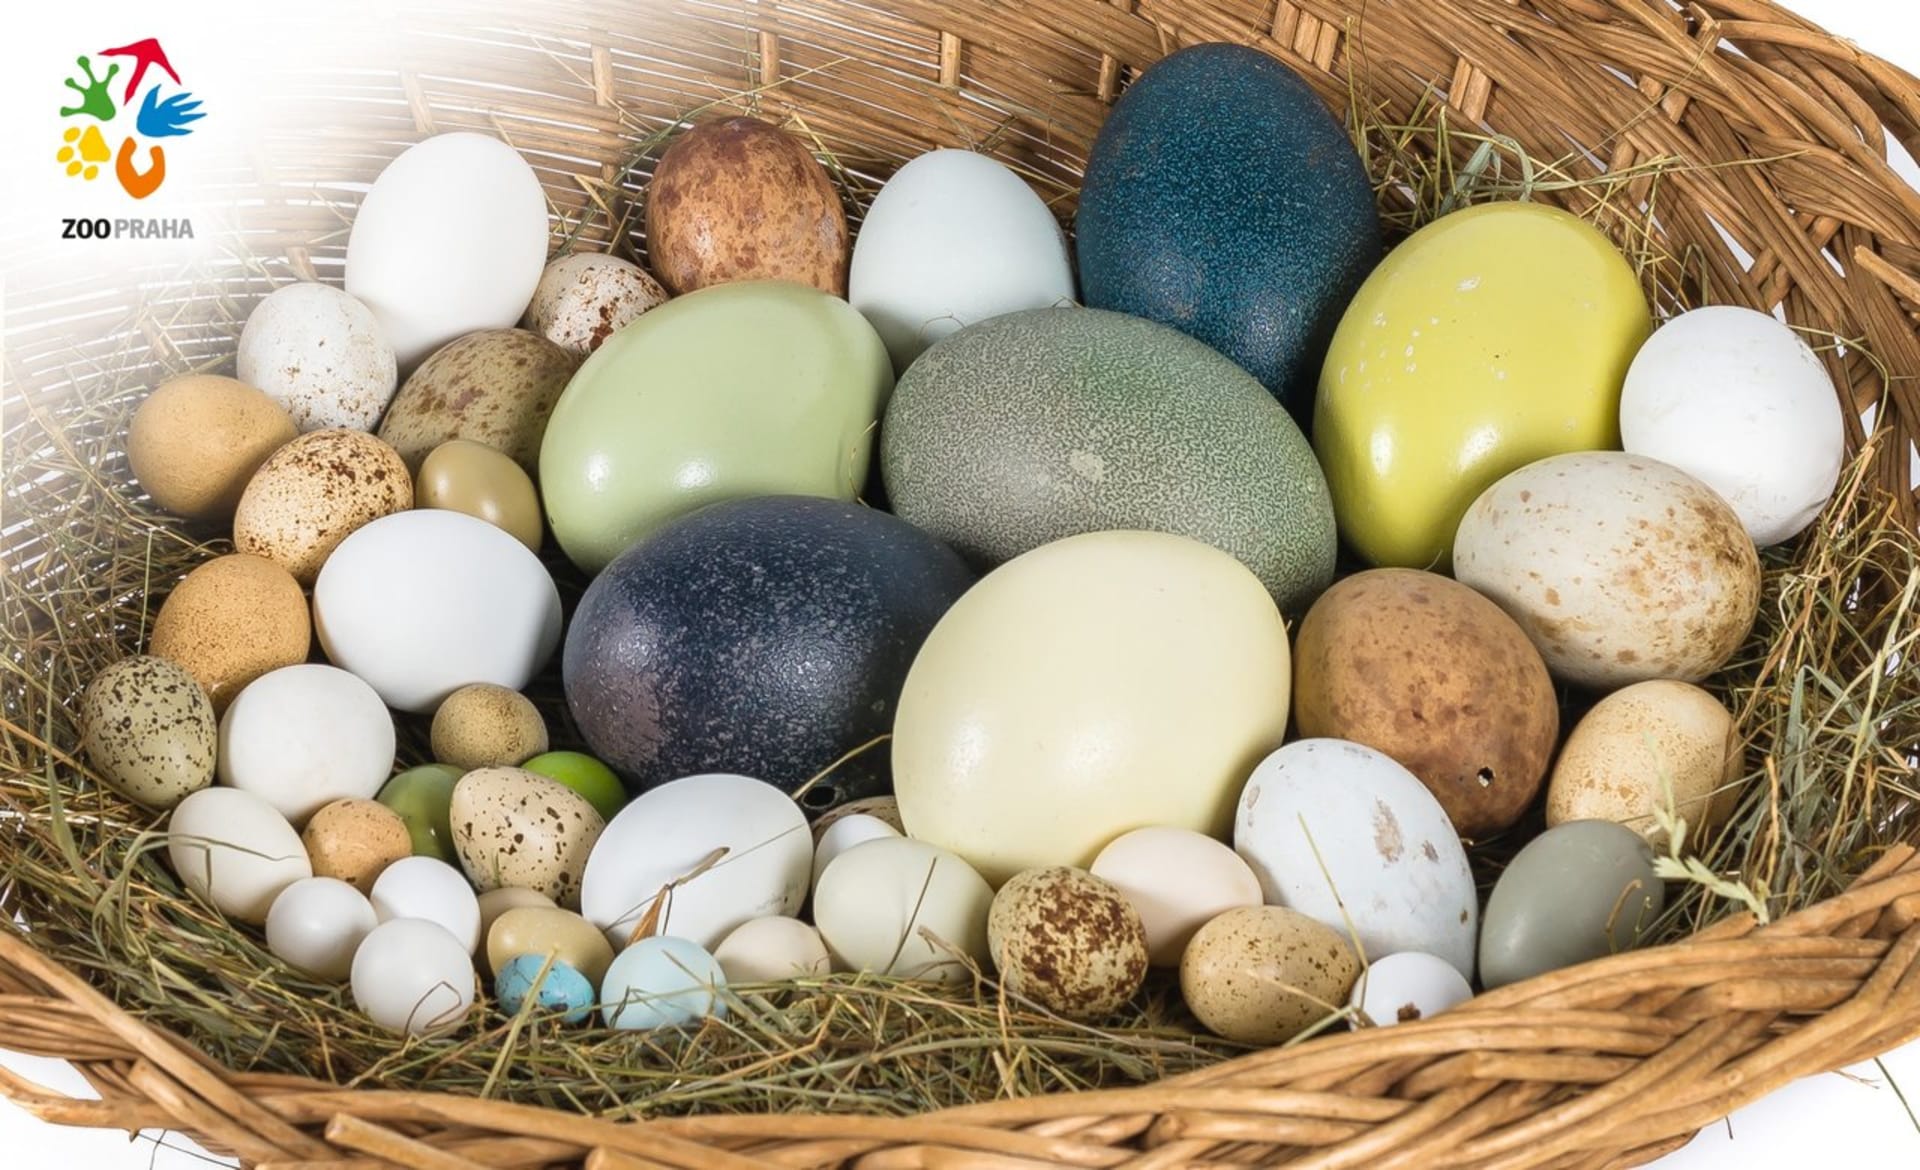 Zkuste si tipnout, kterých druhů ptáků jsou vejce v ošatce.